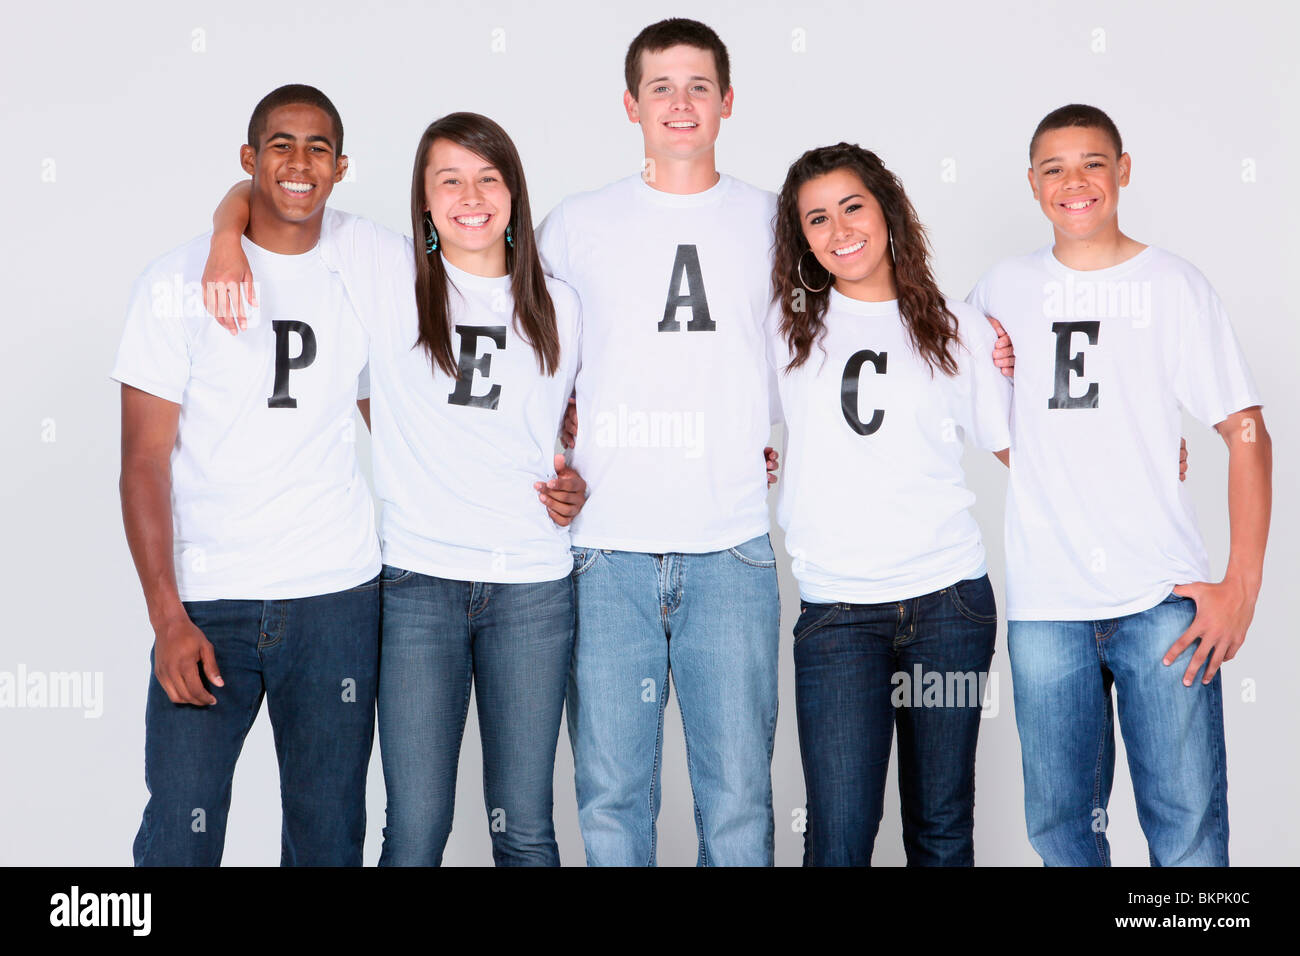 Eine Gruppe von Jugendlichen mit ihren T-Shirts Rechtschreibung "Frieden  Stockfotografie - Alamy